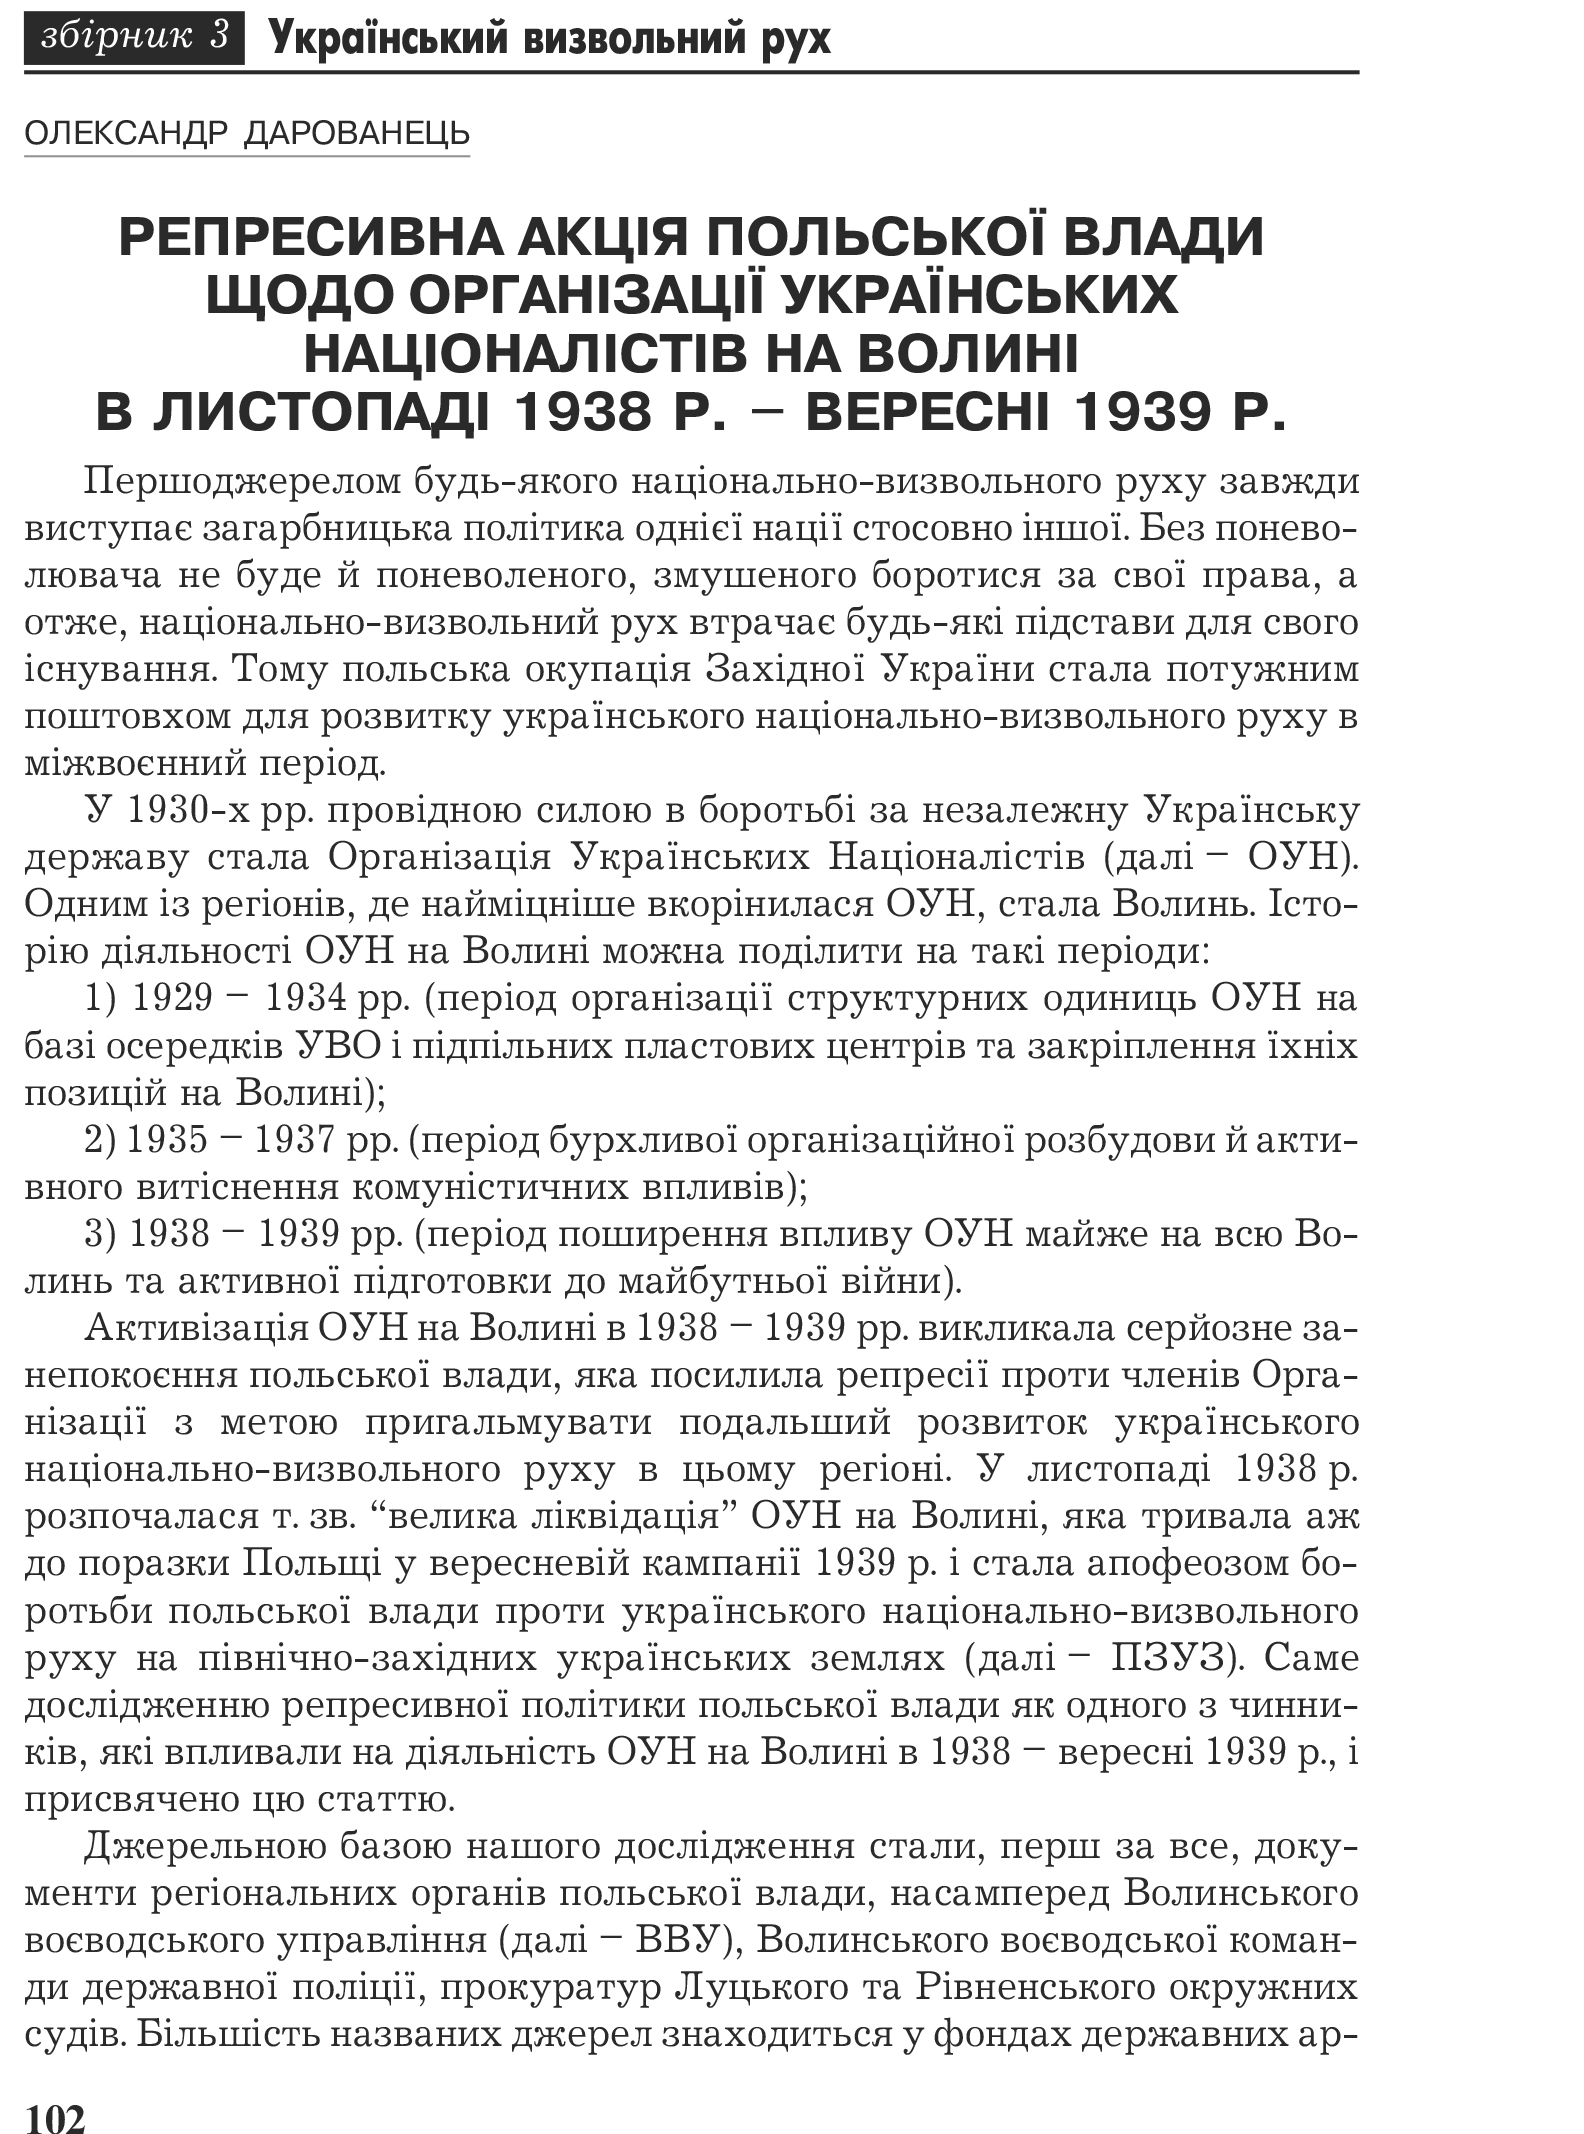 Український визвольний рух №3, ст. 102 - 144